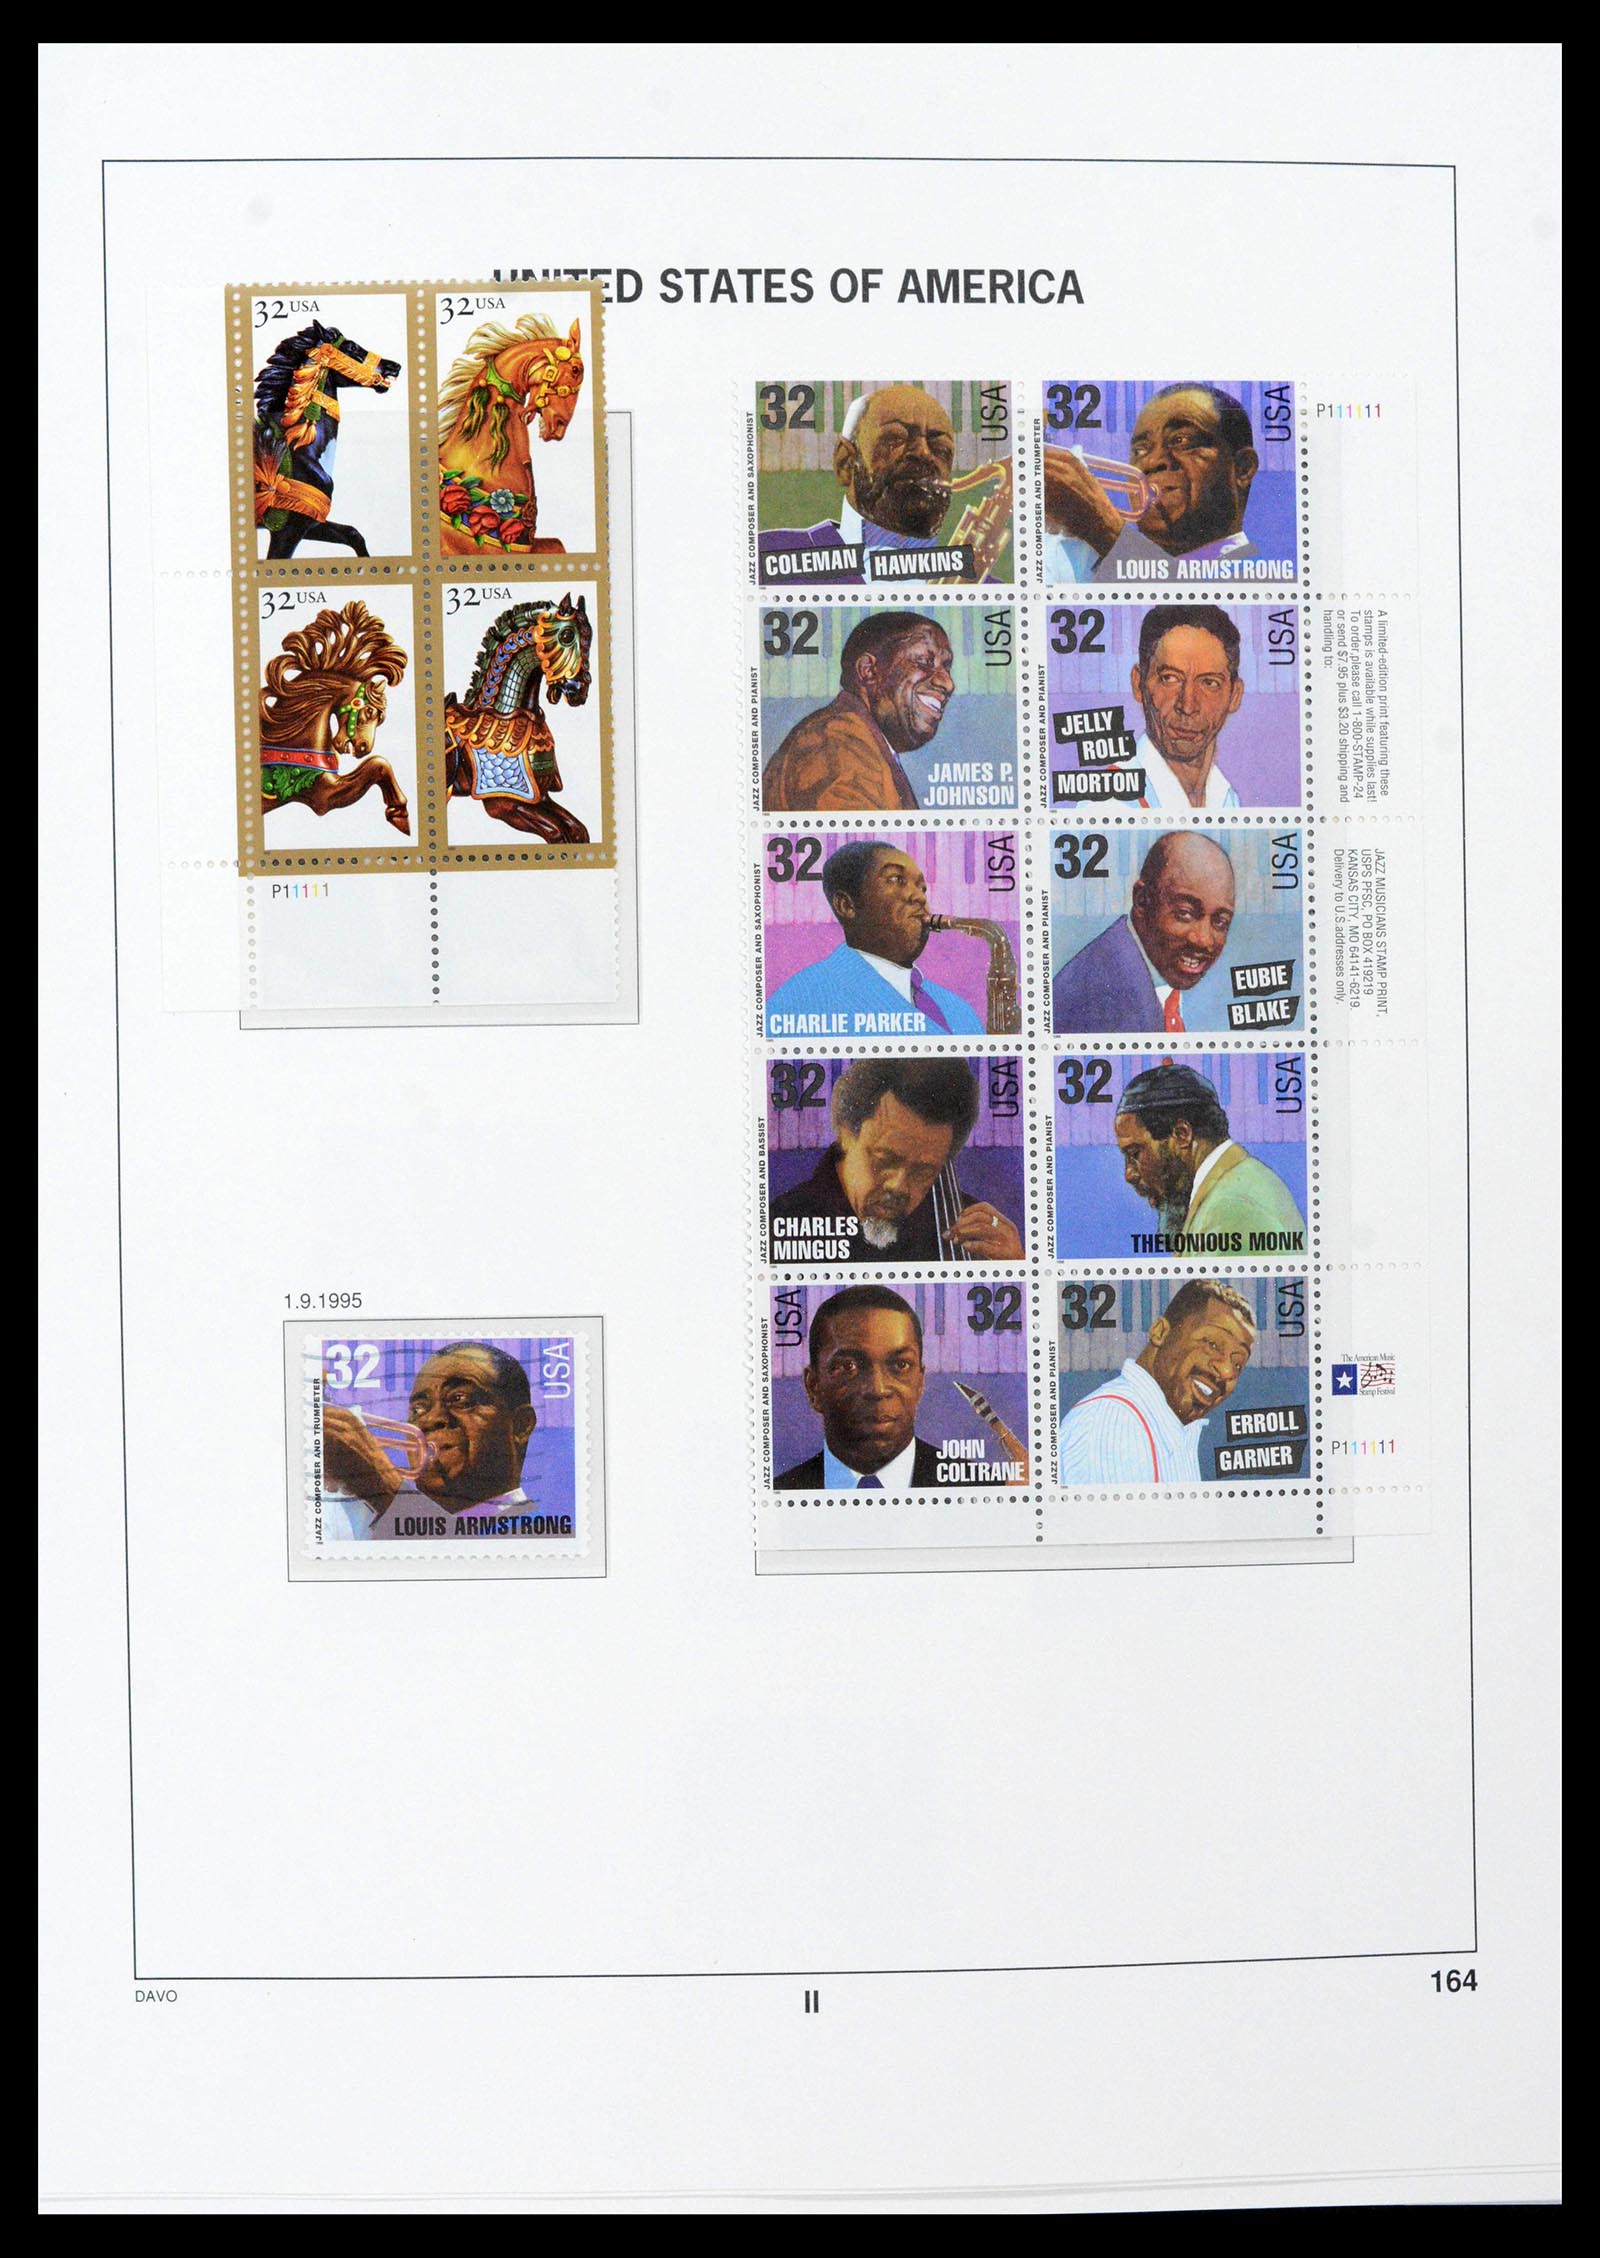 39349 0059 - Stamp collection 39349 USA 1989-2021!